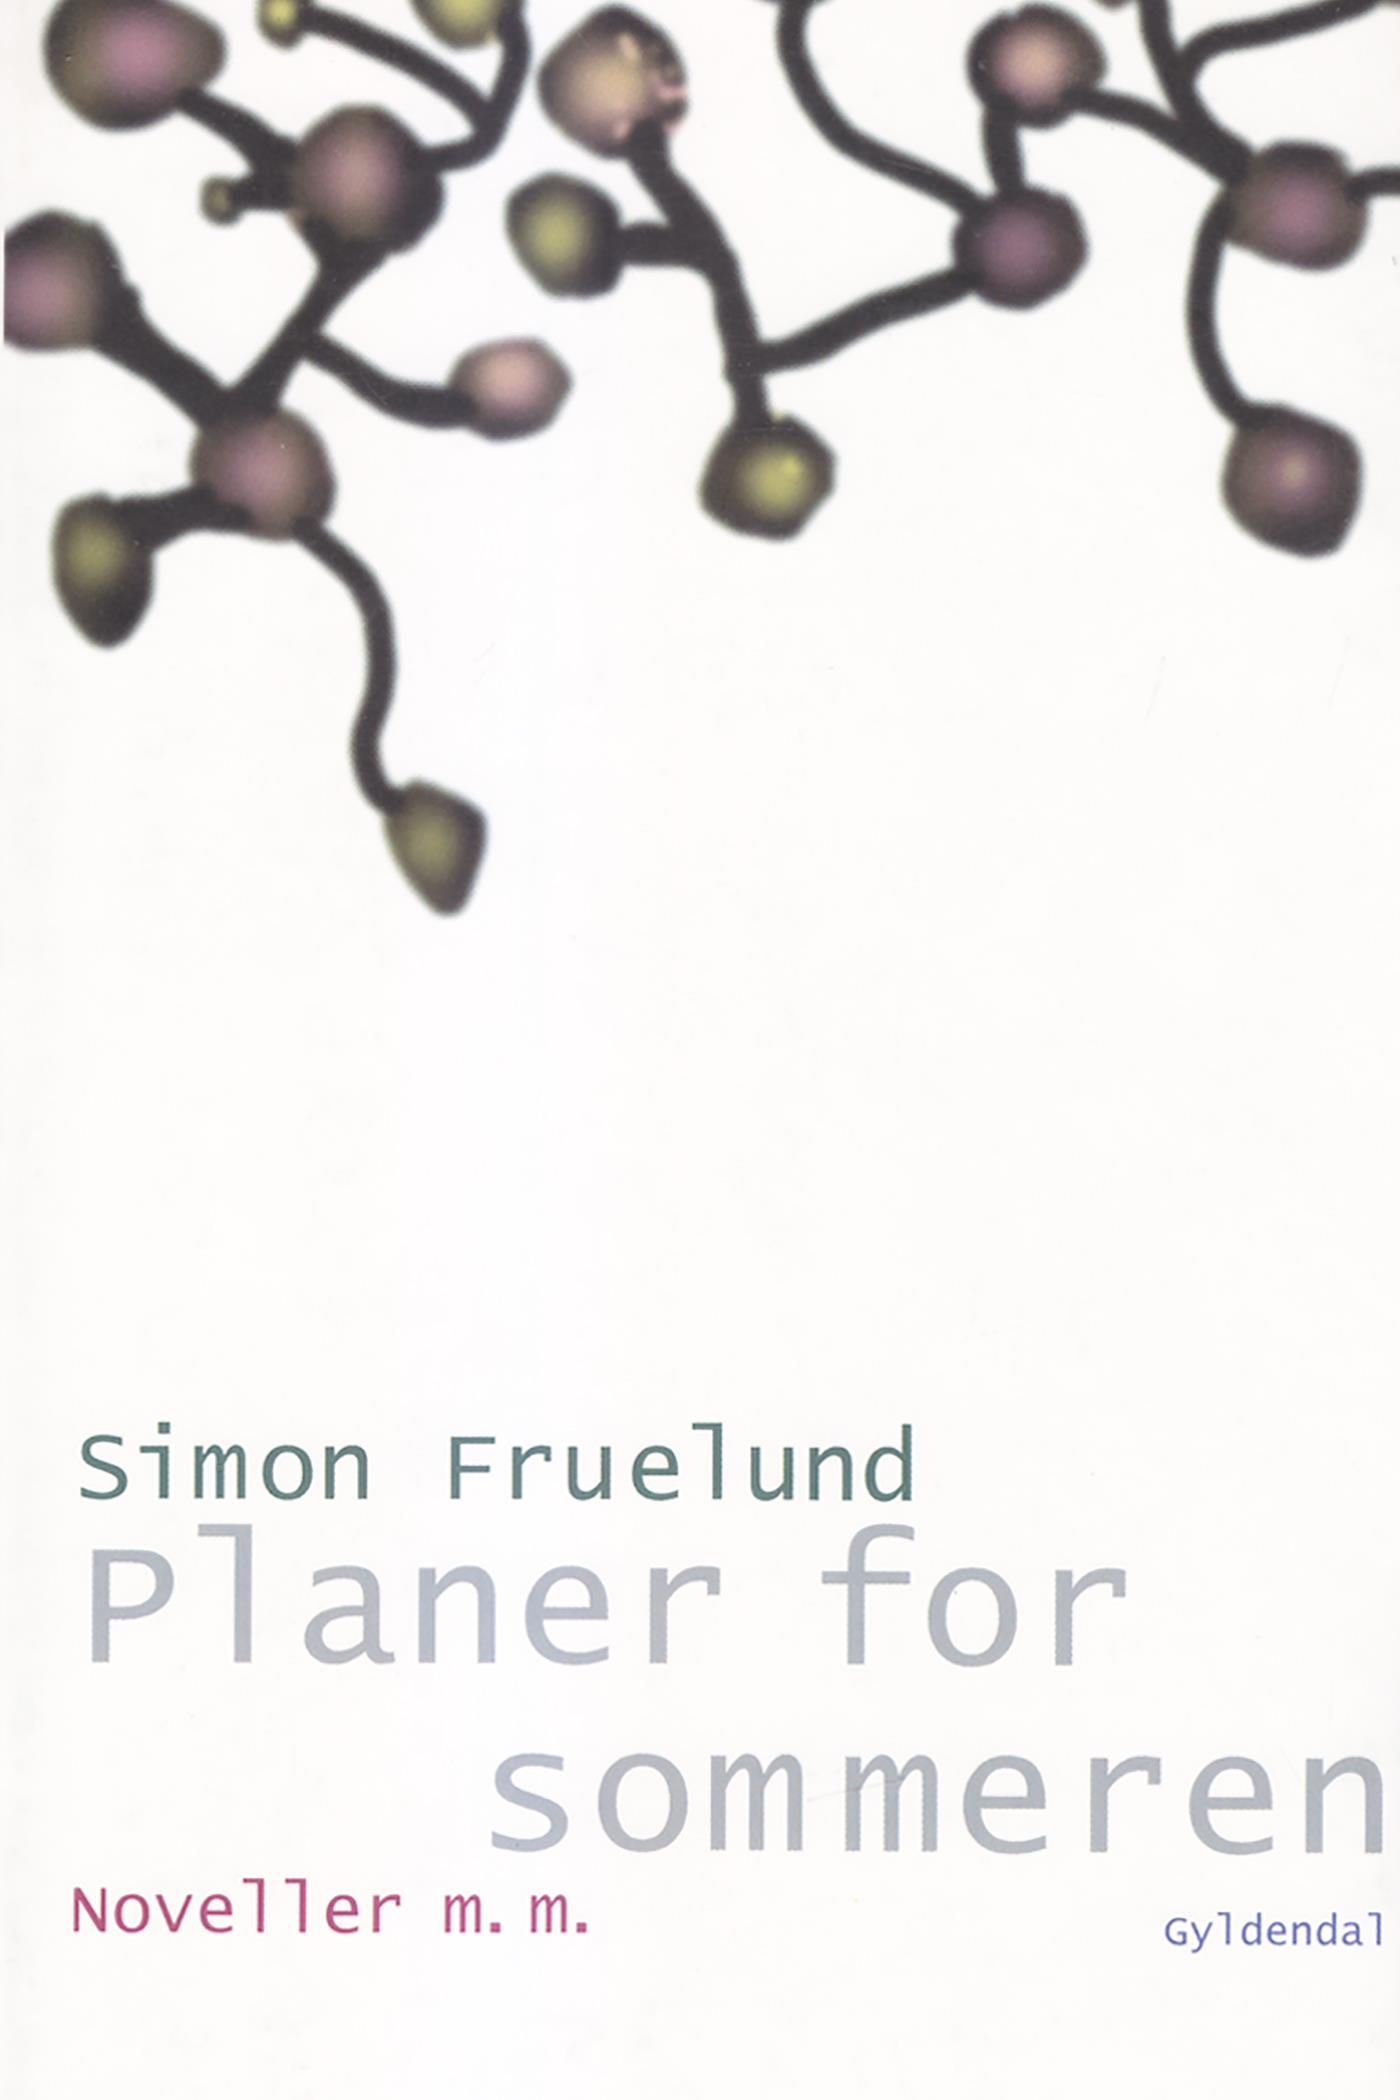 Planer for sommeren, e-bog af Simon Fruelund